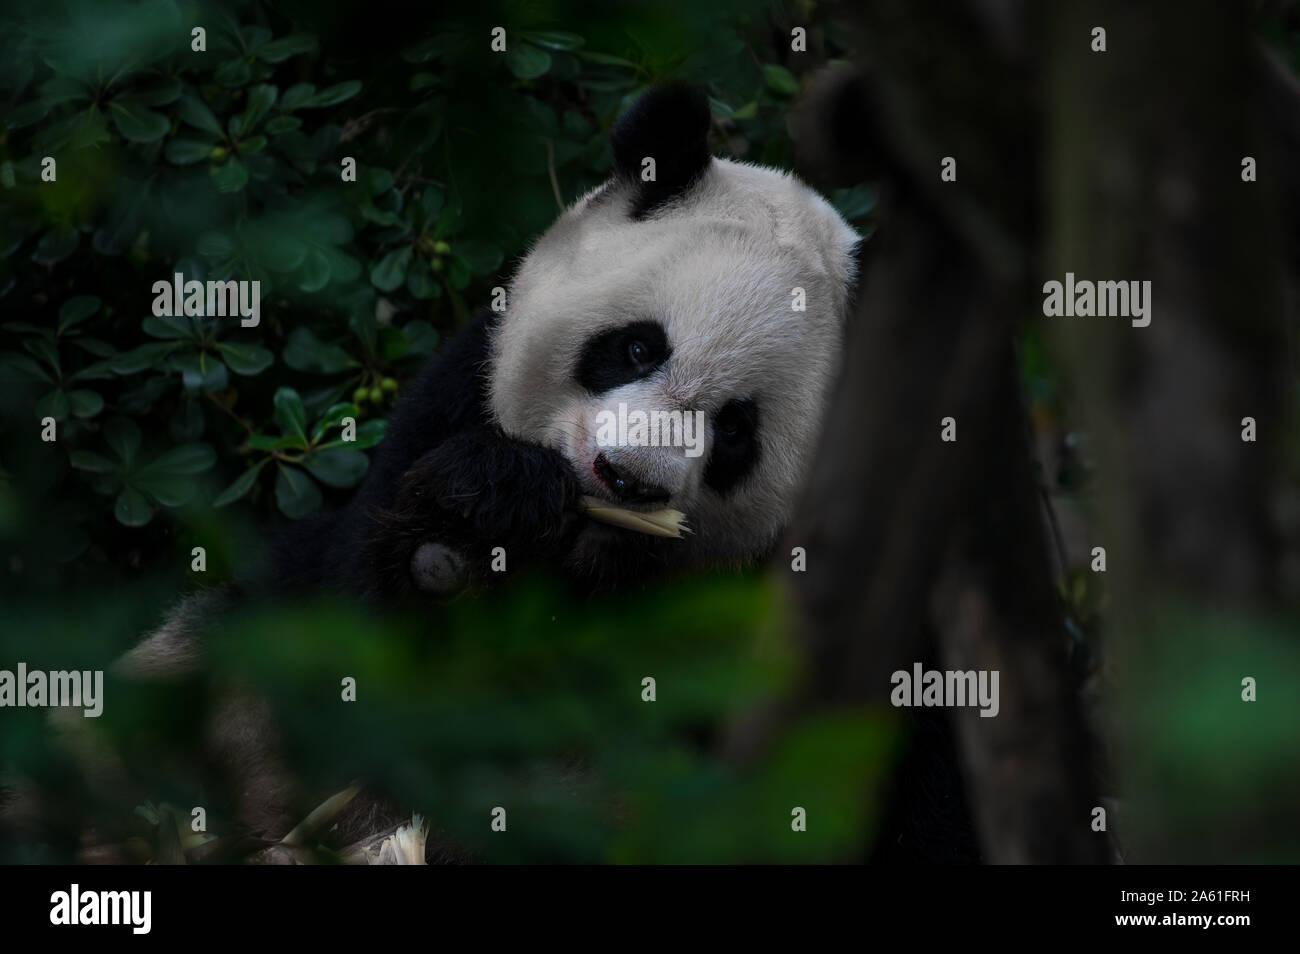 Big Fat lazy panda géant mange de bambou dans la forêt. Voir à travers les branches, feuilles et d'arbres. Espèces en péril. Banque D'Images